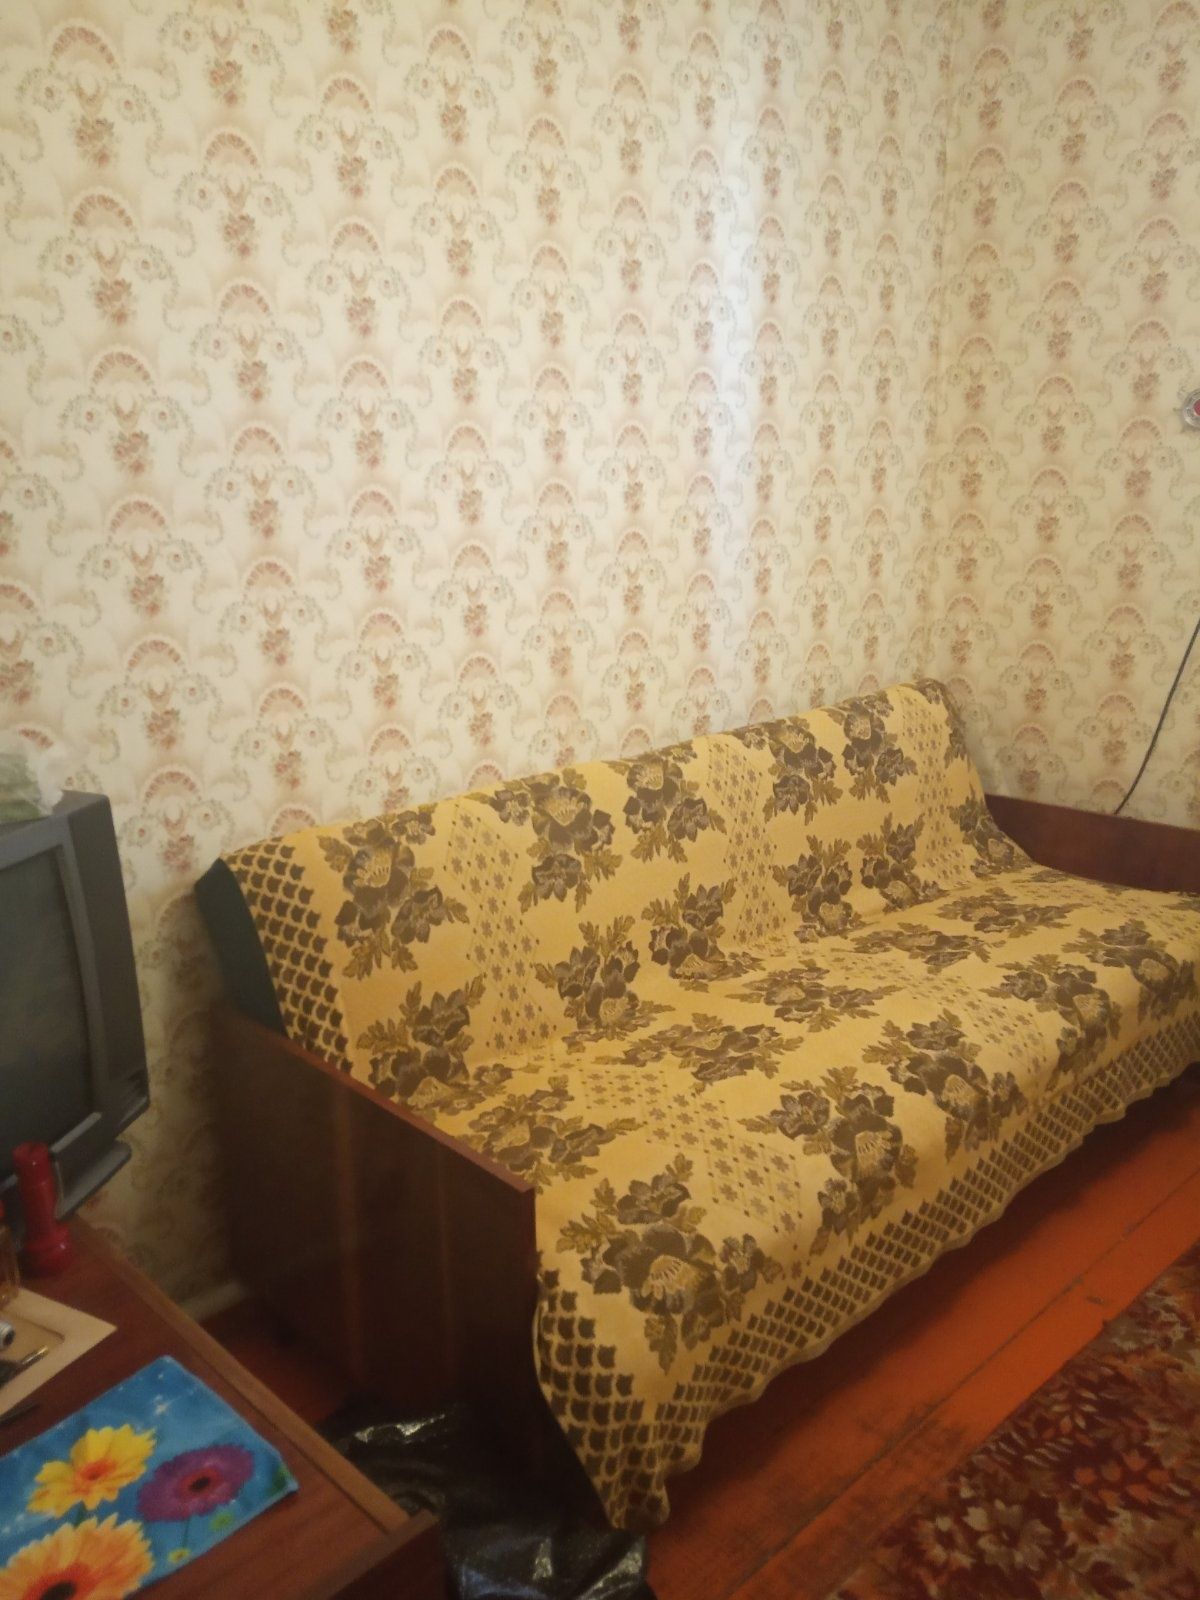 Продам будинок в Одесі